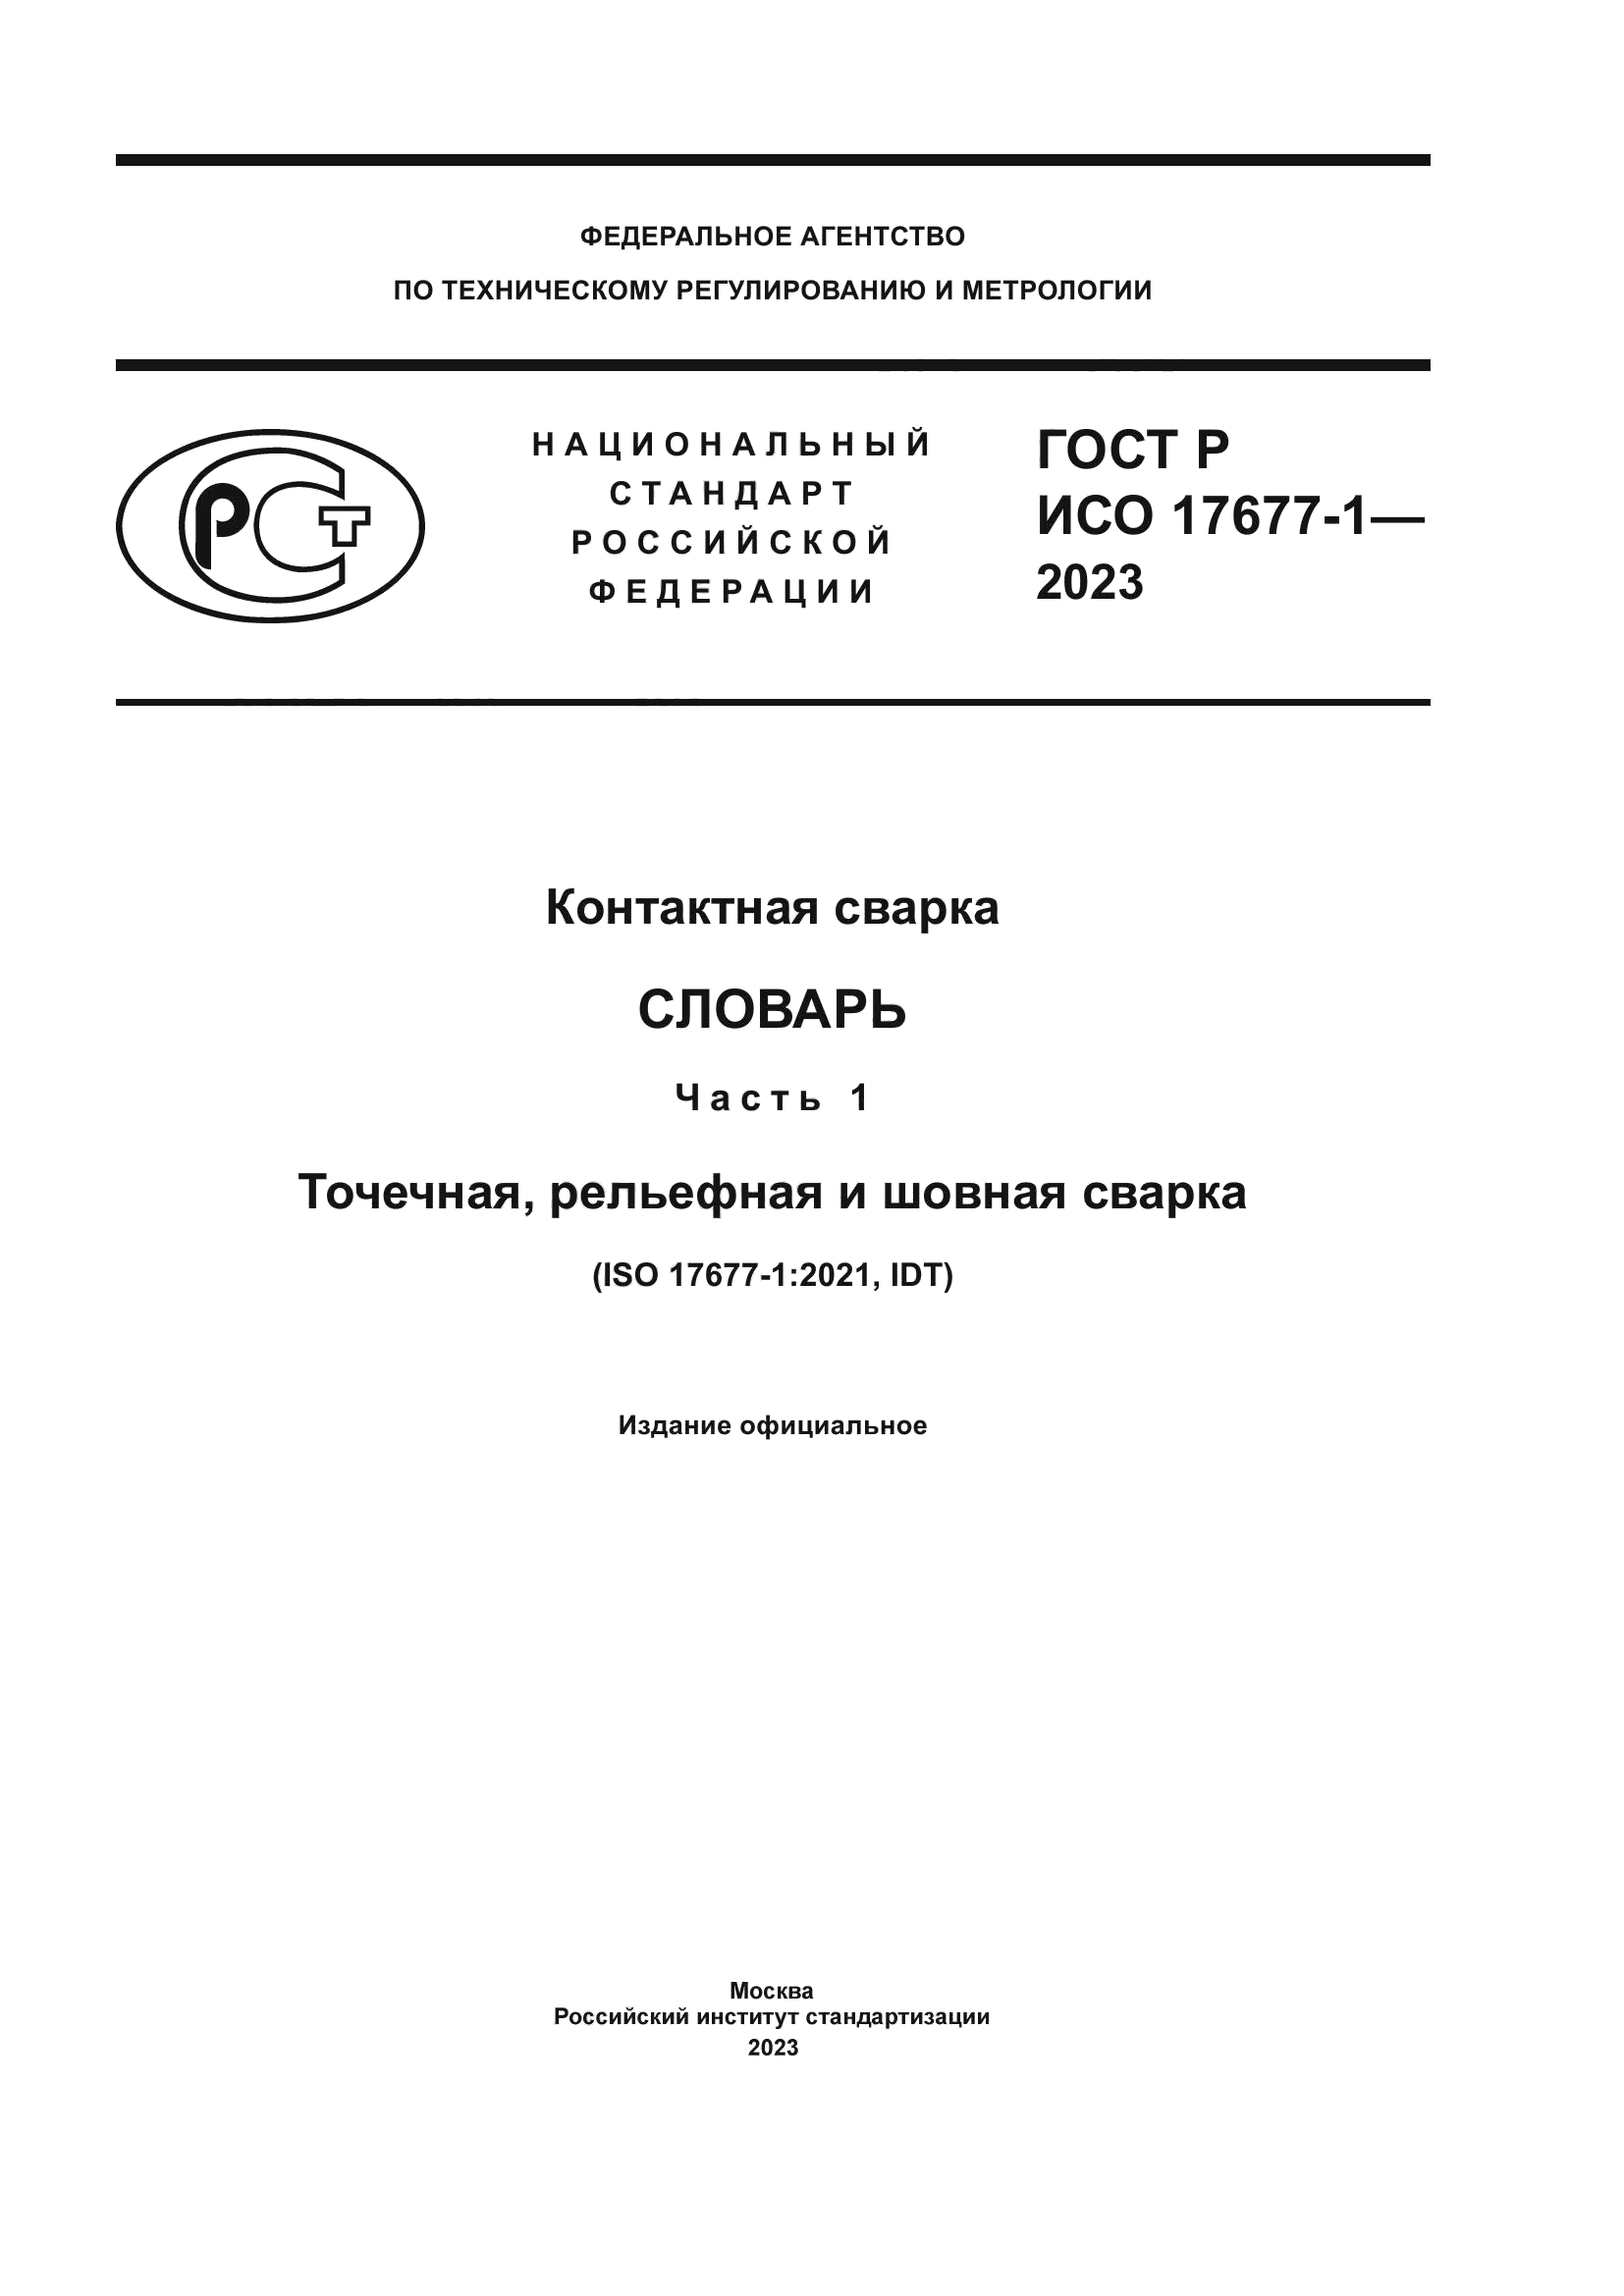 ГОСТ Р ИСО 17677-1-2023